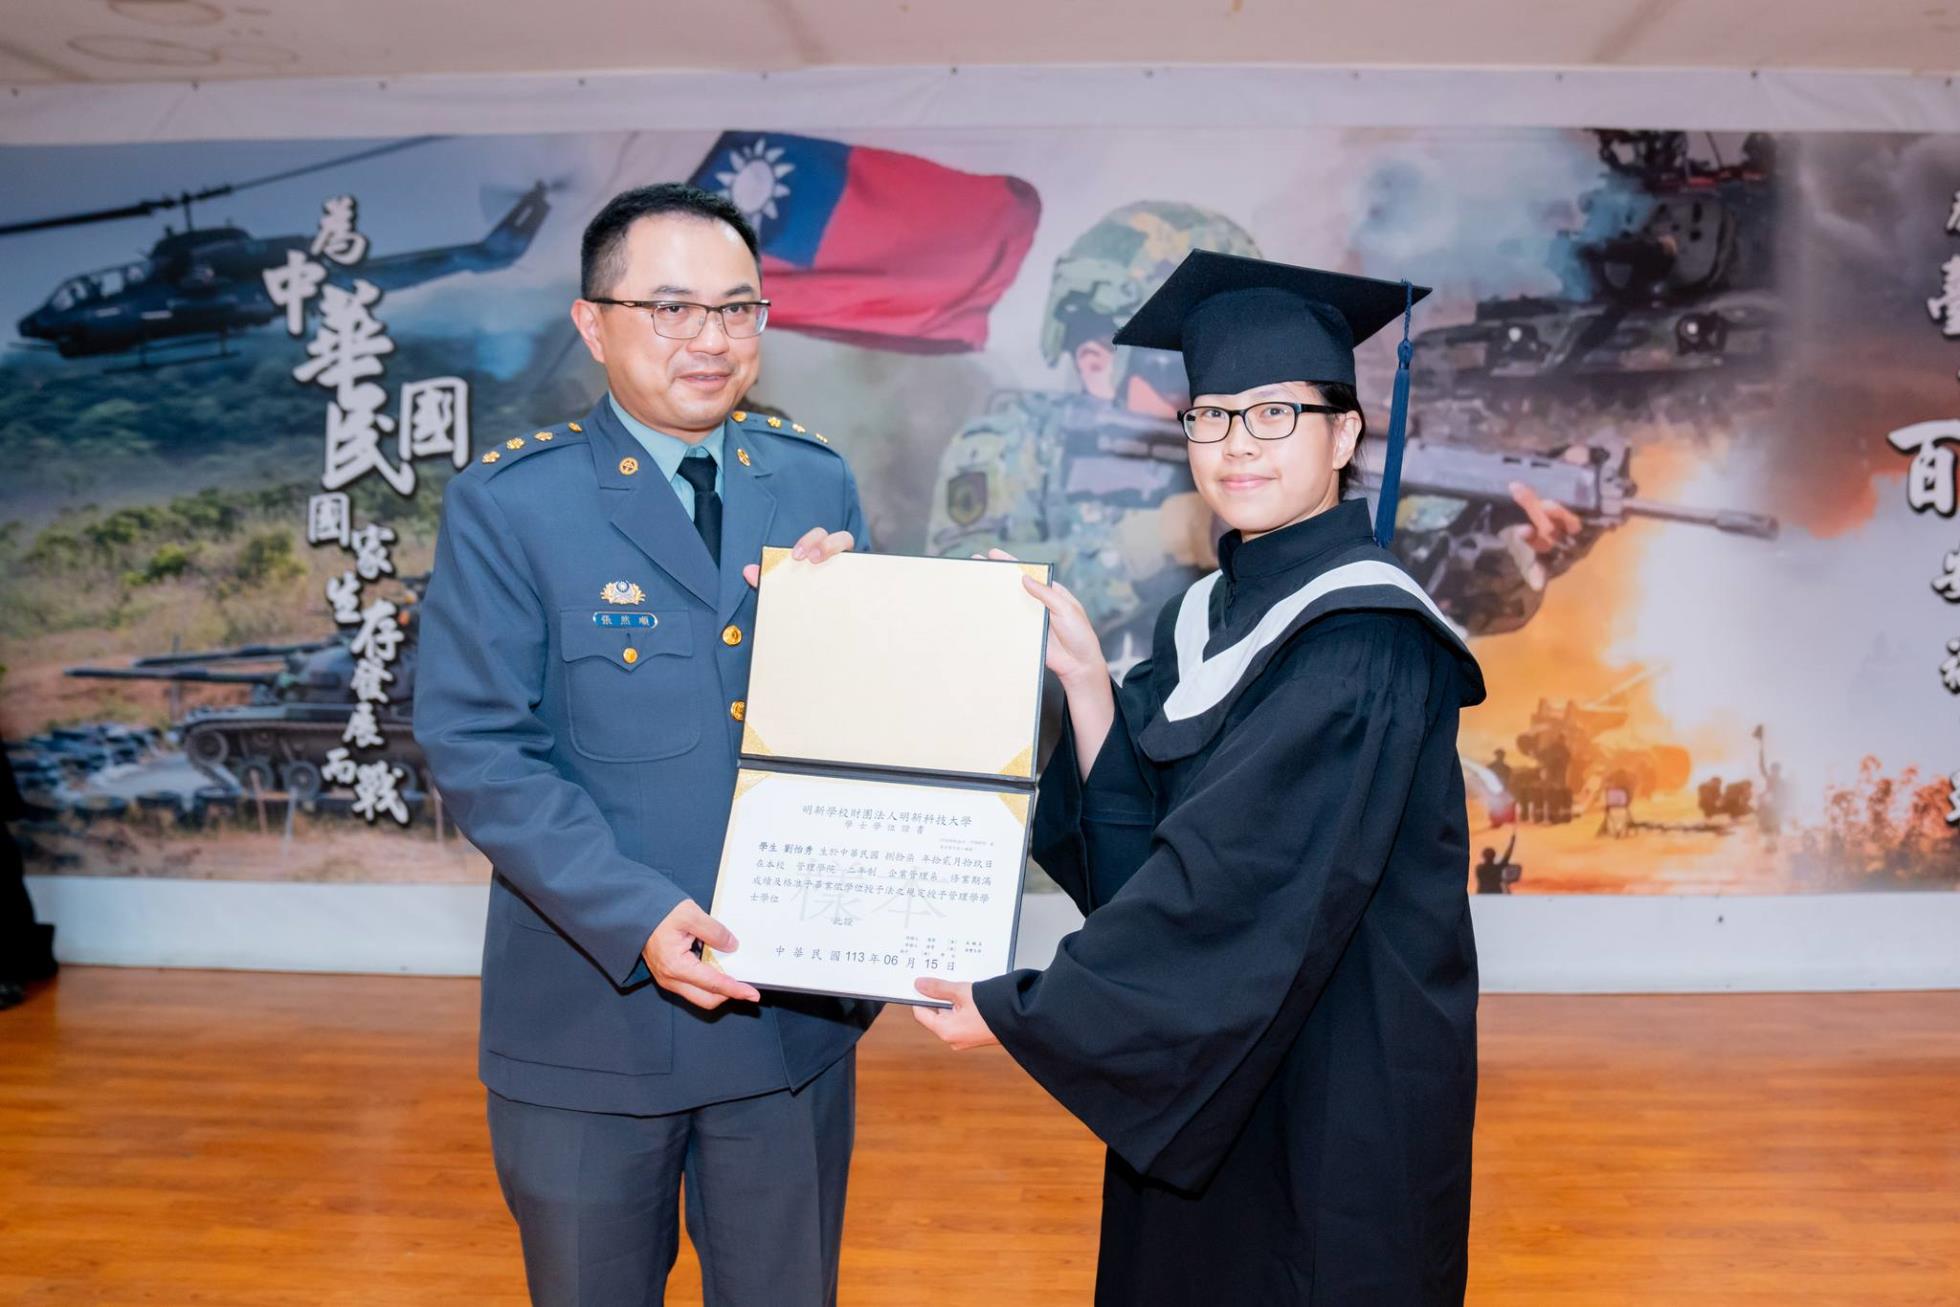 018陸軍269旅副旅長張上校頒發畢業證書予畢業生劉怡秀同學